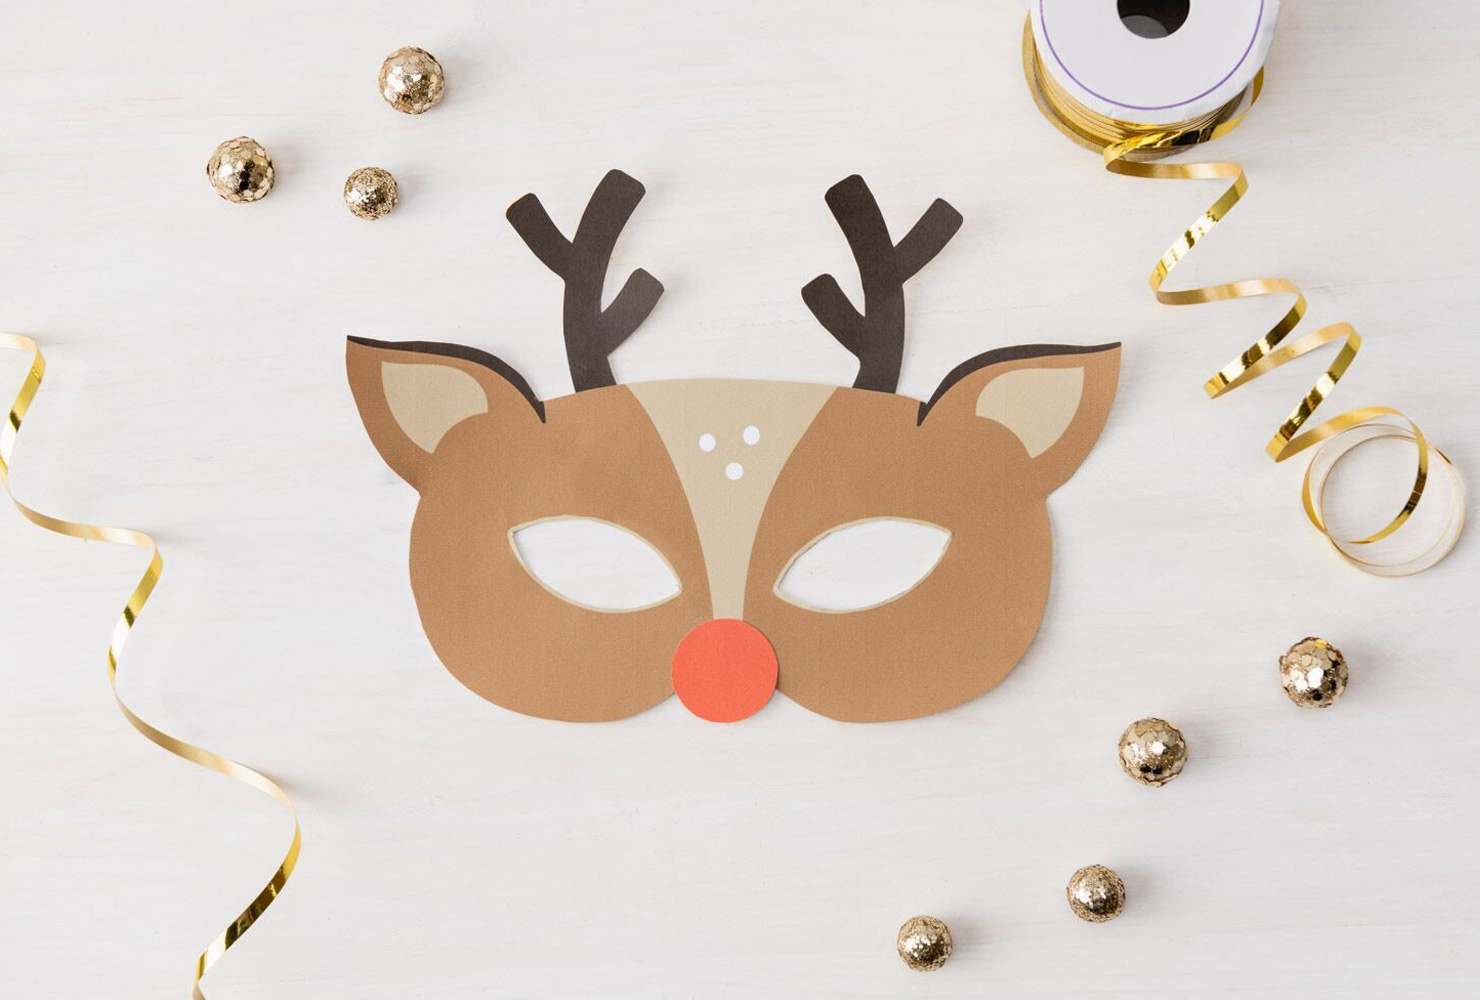 29 Christmas Crafts For Kids + Free Printable Crafts | Shutterfly - Free Printable Christmas Craft Templates